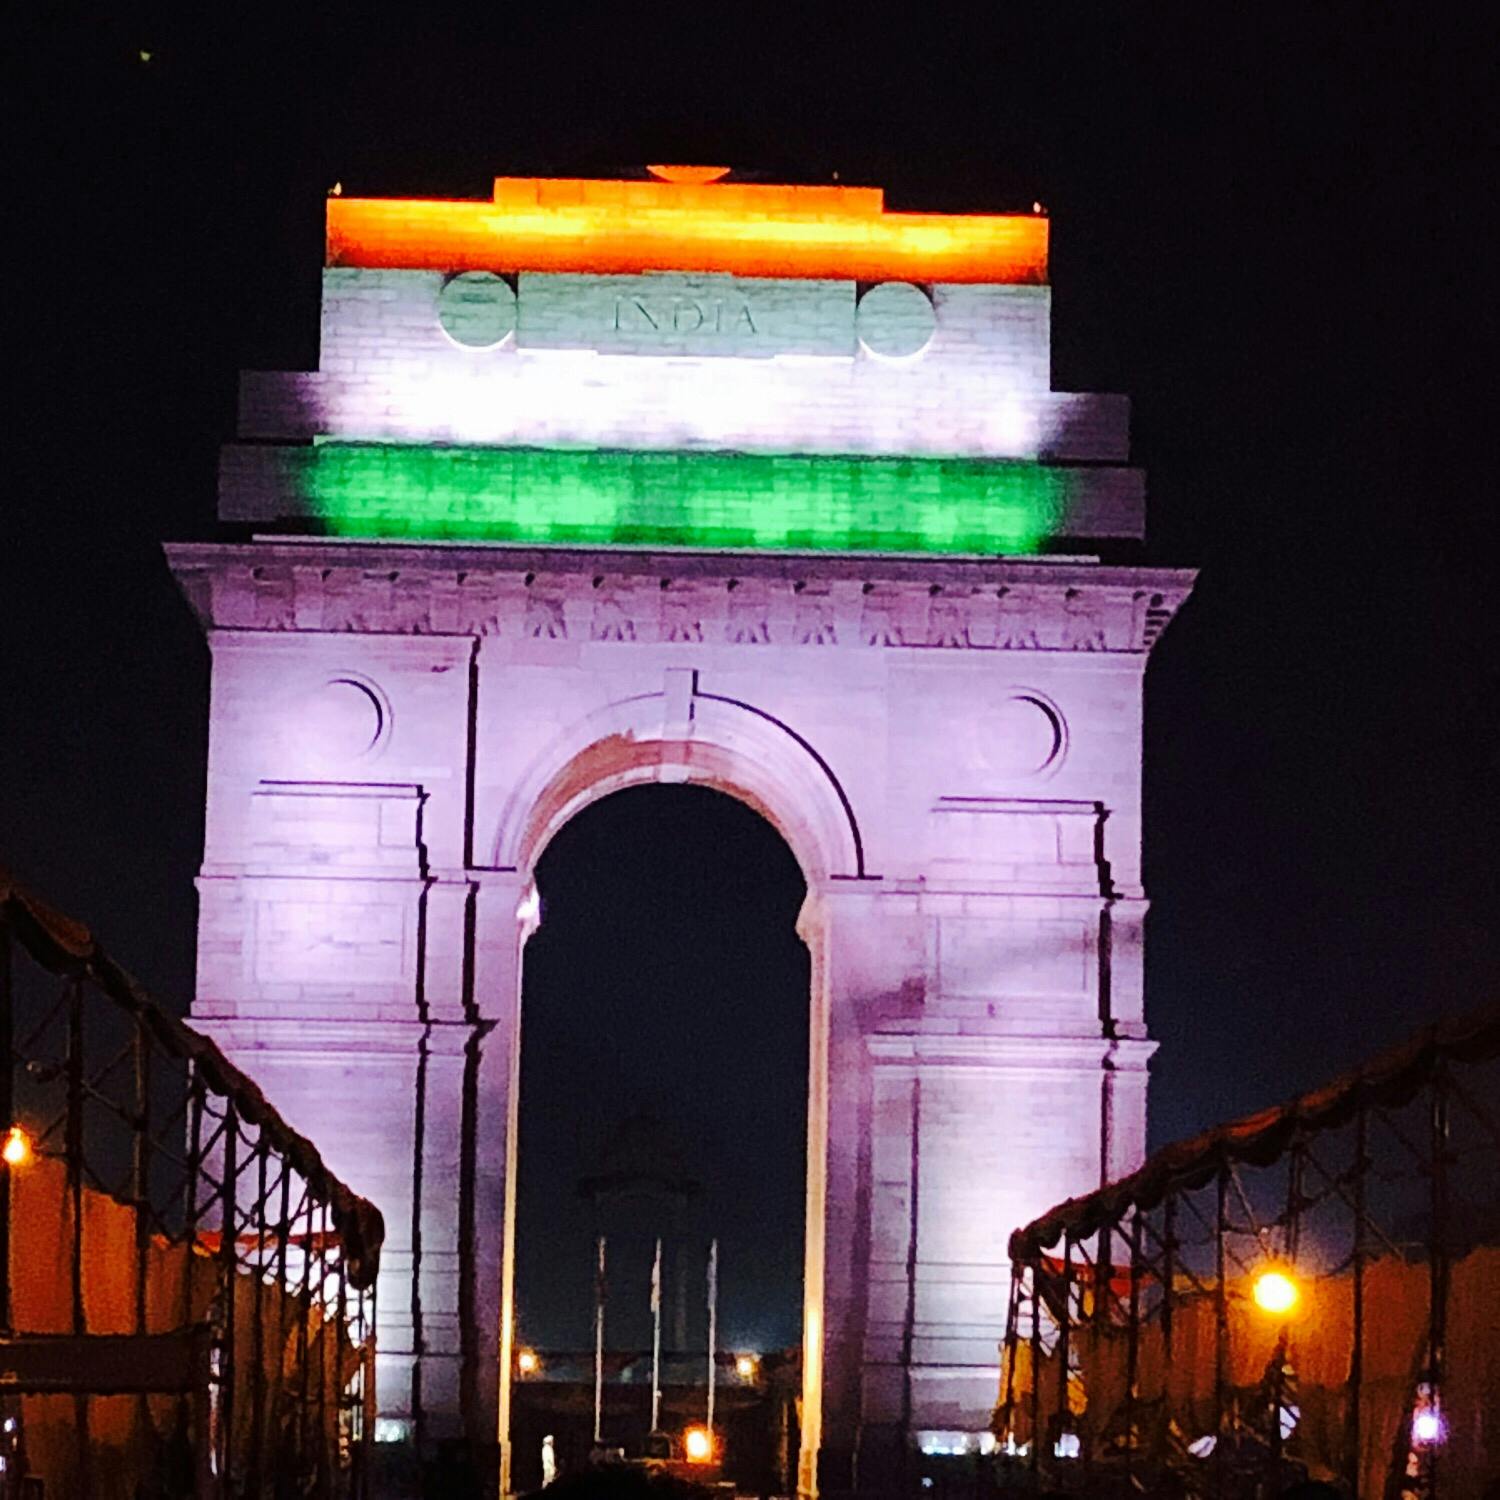 インド門 デリー India Gate Delhi の投稿写真 感想 みどころ インド デリー Independence Day仕様のイ トリップノート